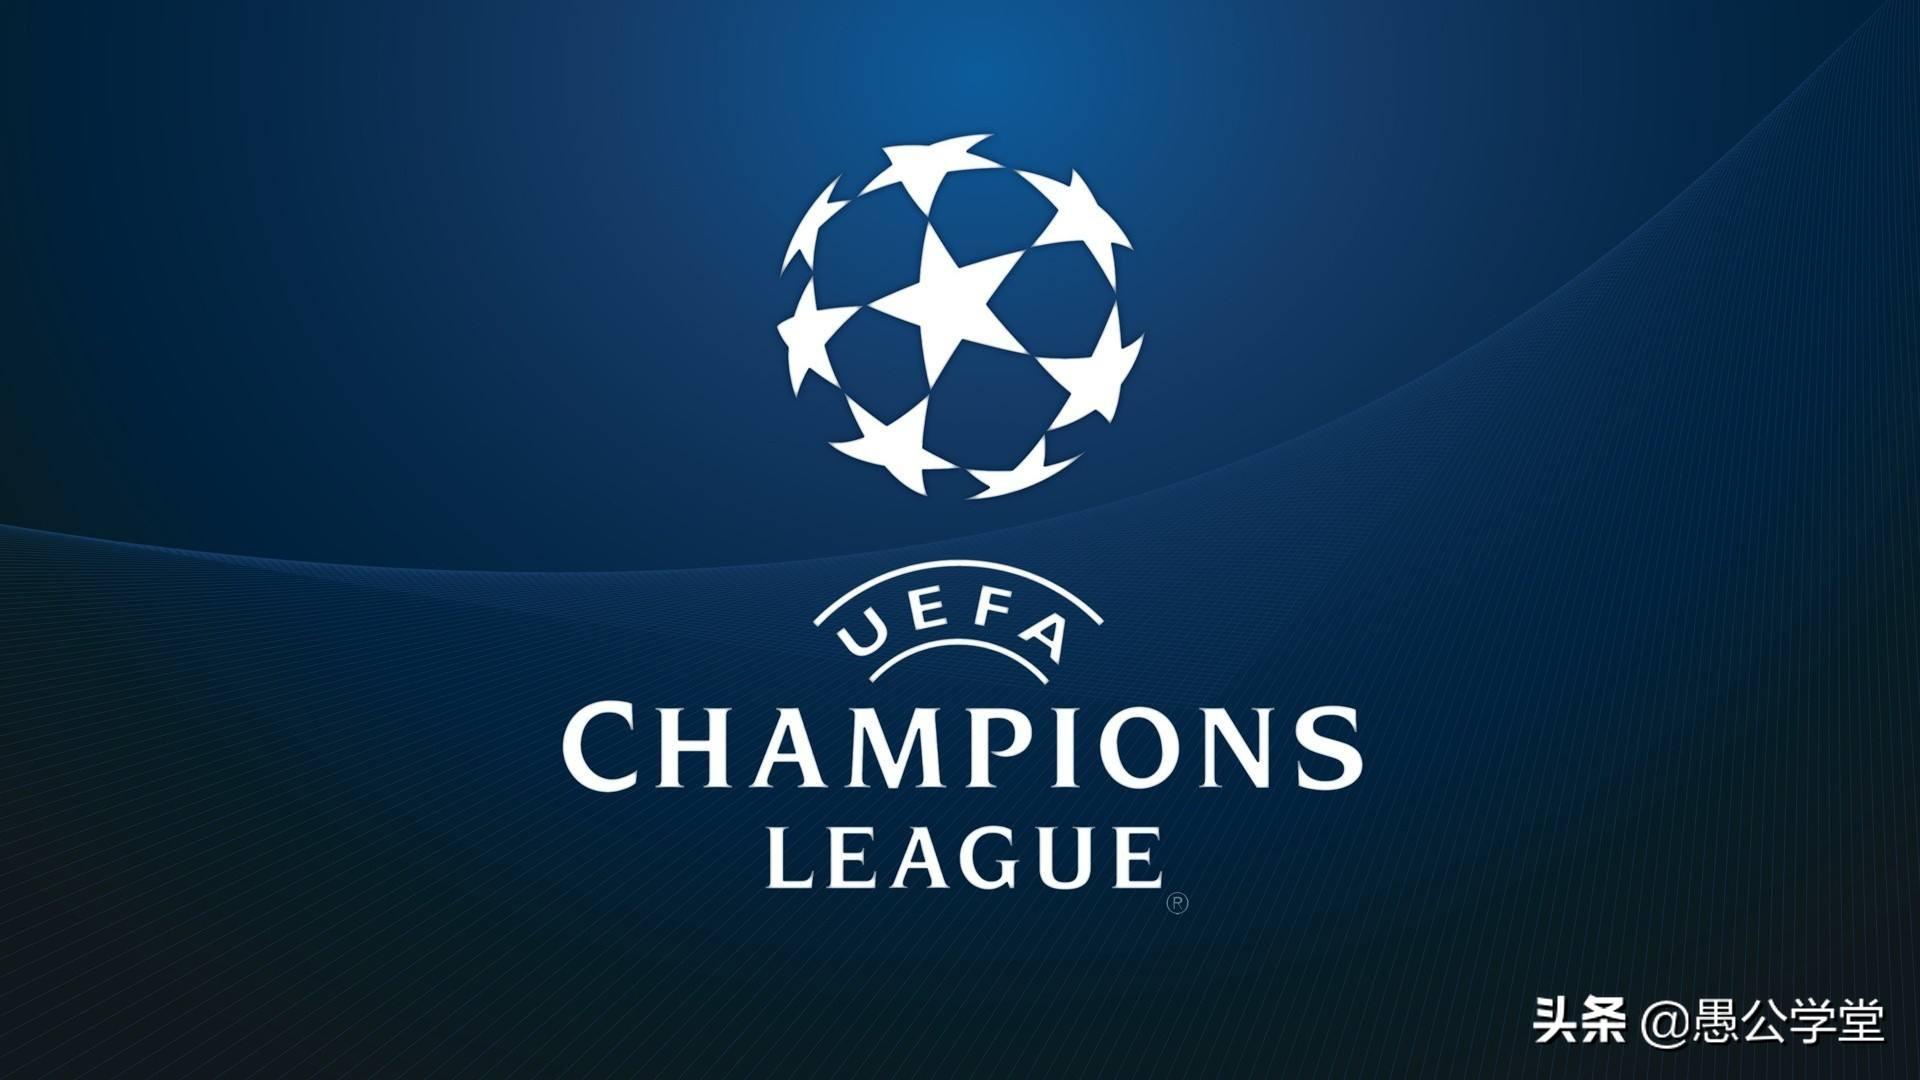 欧冠二分之一决赛日期17 足球欧冠4分之一决赛赛程